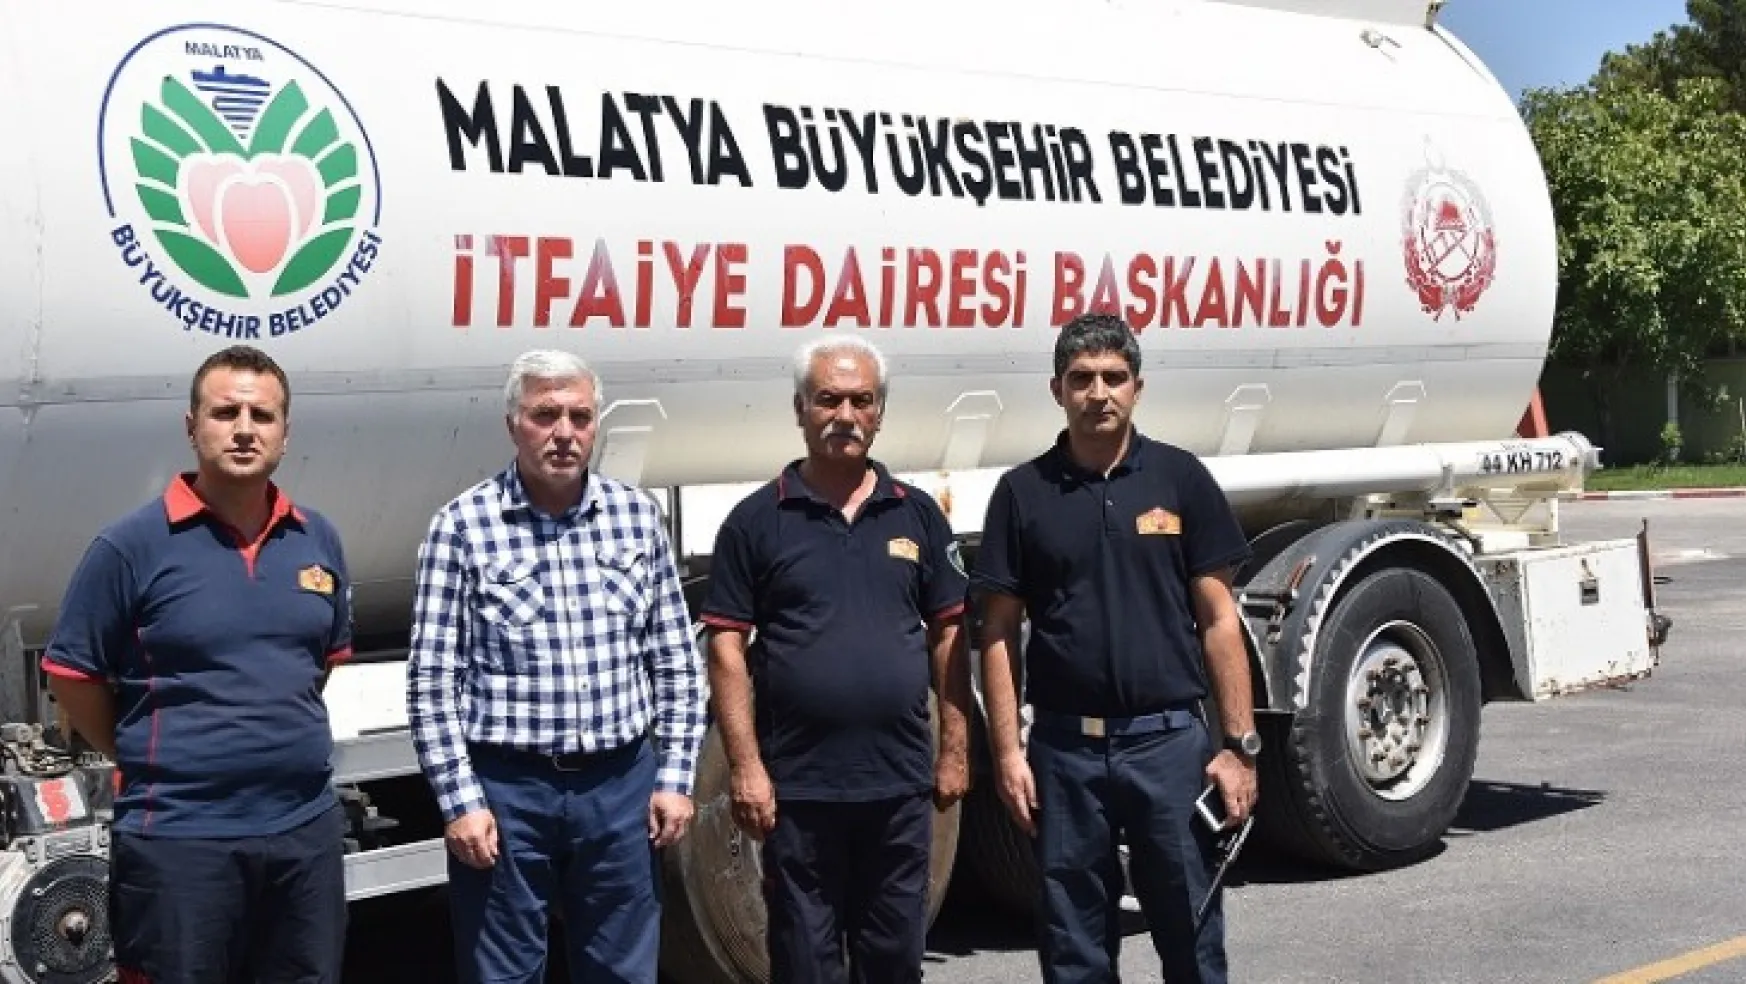 Malatya Büyükşehir Belediyesi'nden Sel Afeti Yaşanan Bölgelere Destek